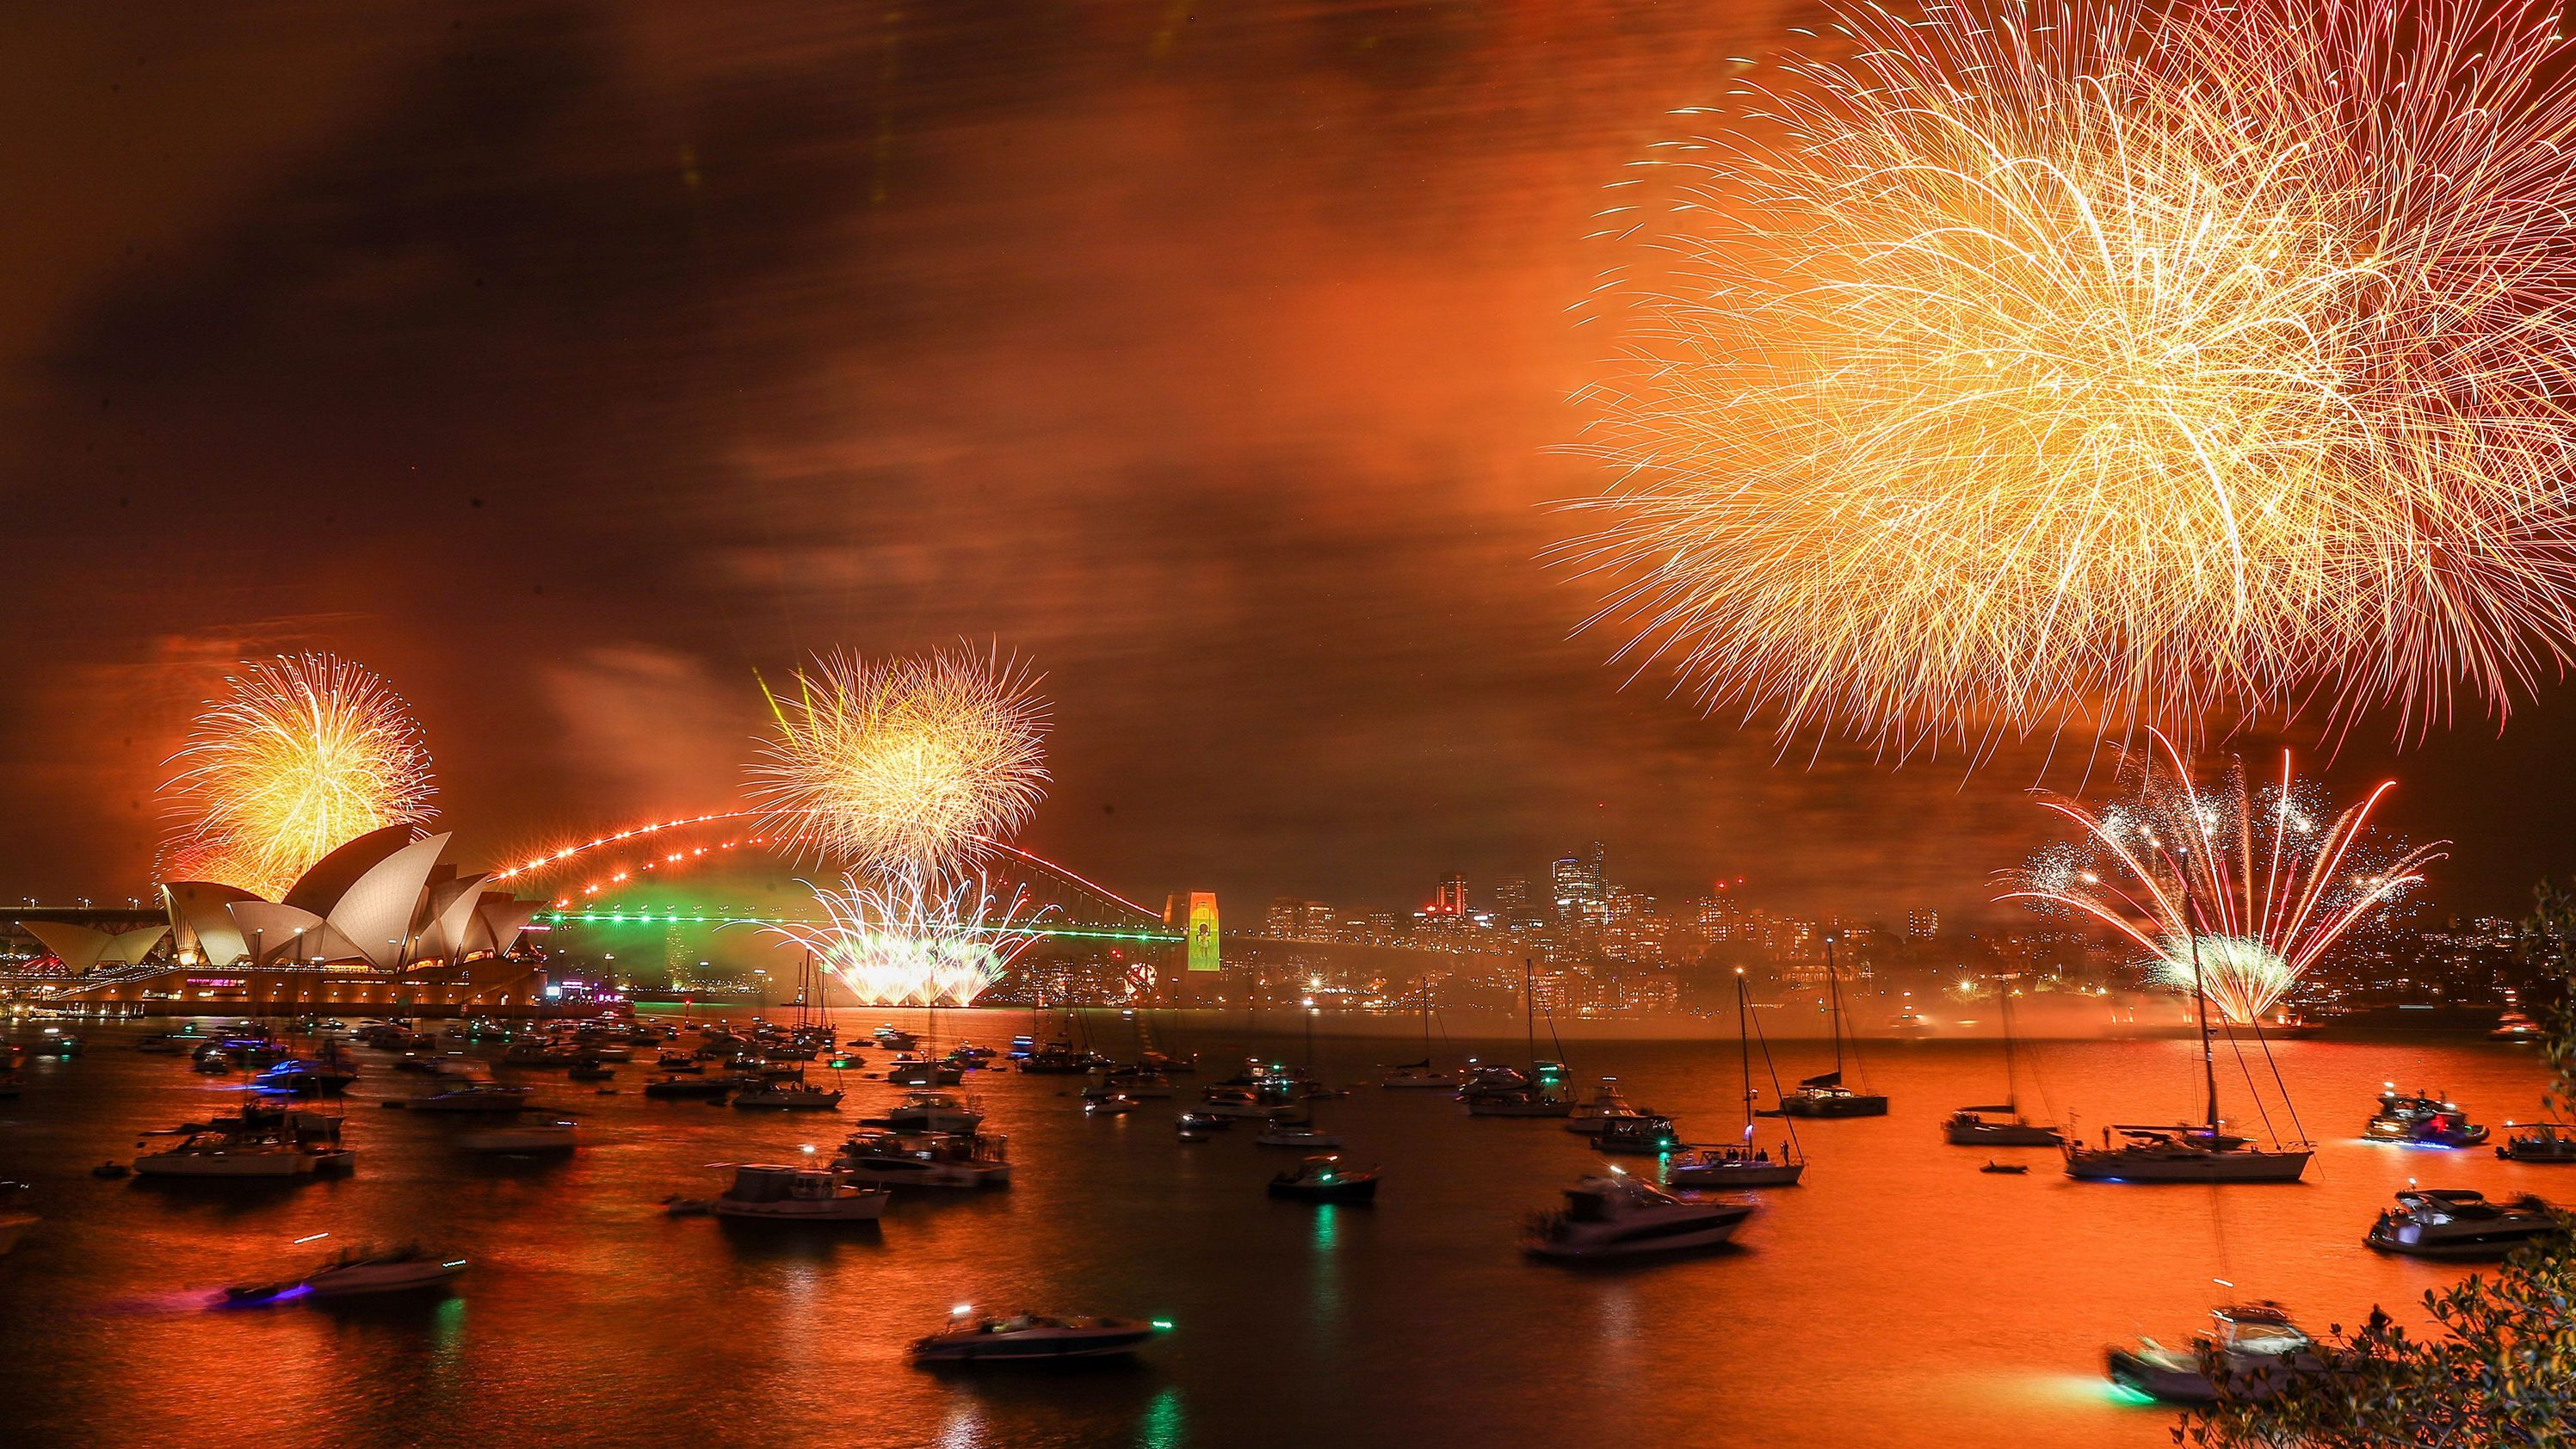 Fireworks light up the sky over Sydney Harbor in Australia.